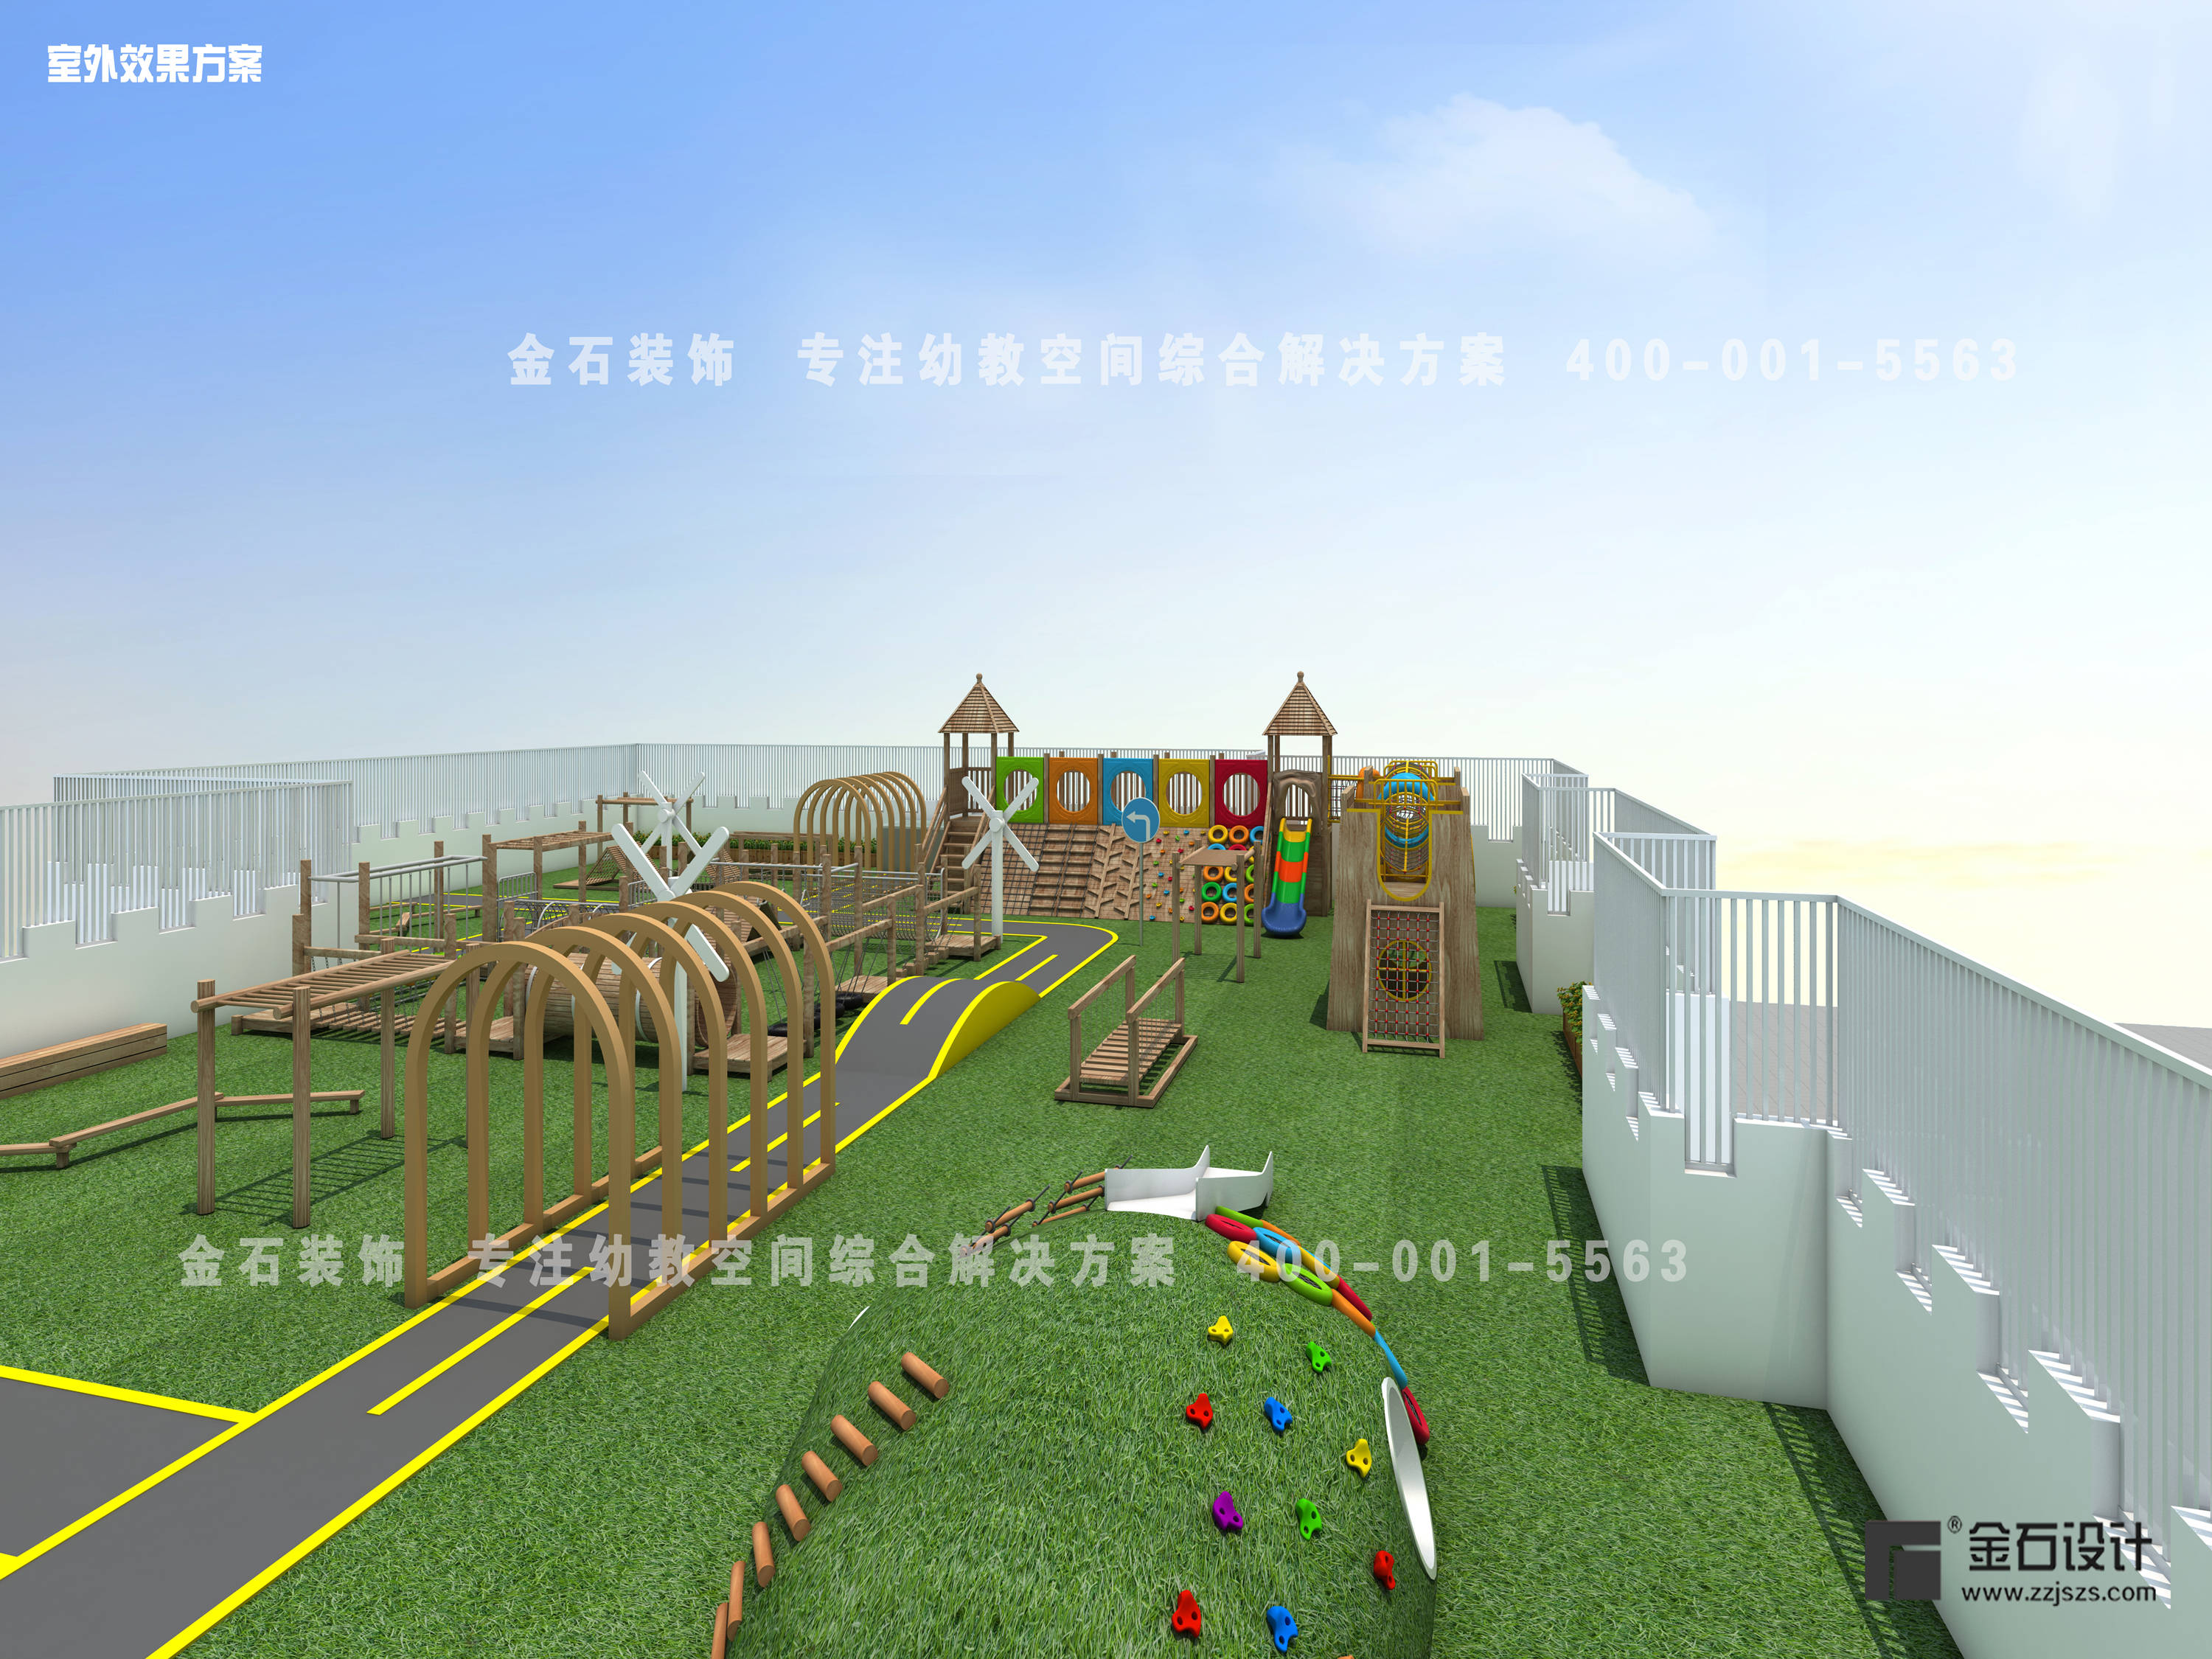 能力|孩子们的快乐星球--幼儿园游乐区设计